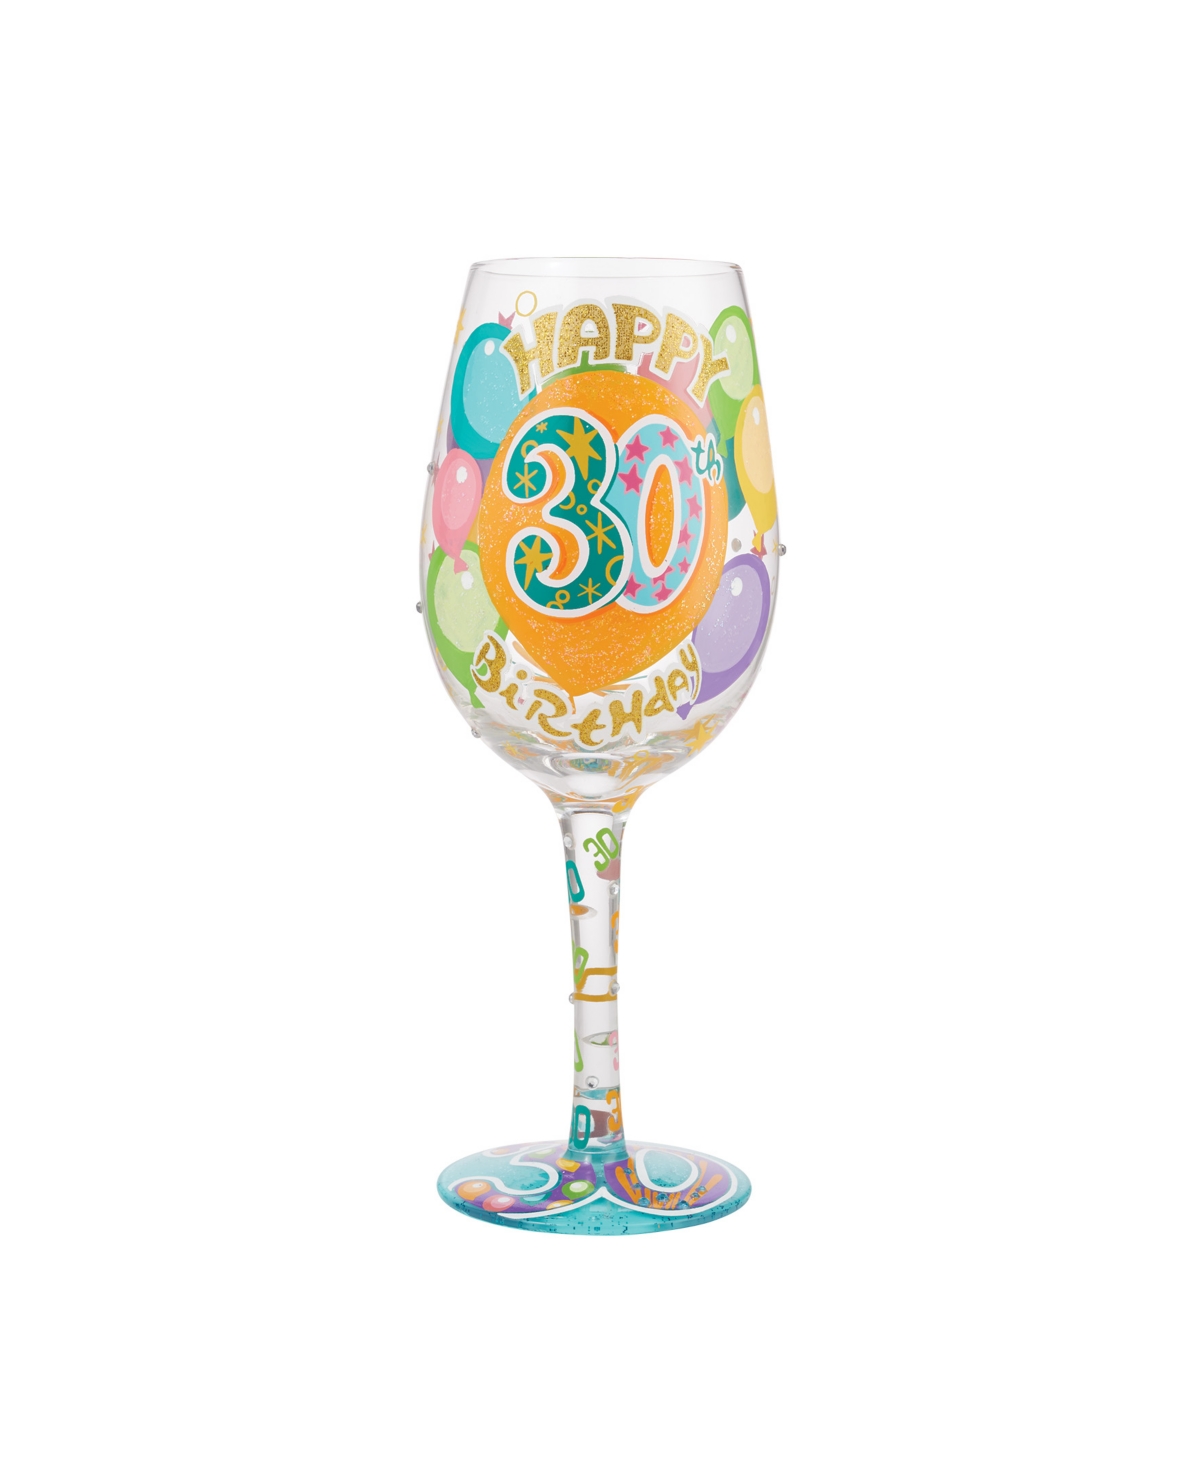 Enesco Lolita Happy 30th Birthday Wine Glass, 15 oz In Multi